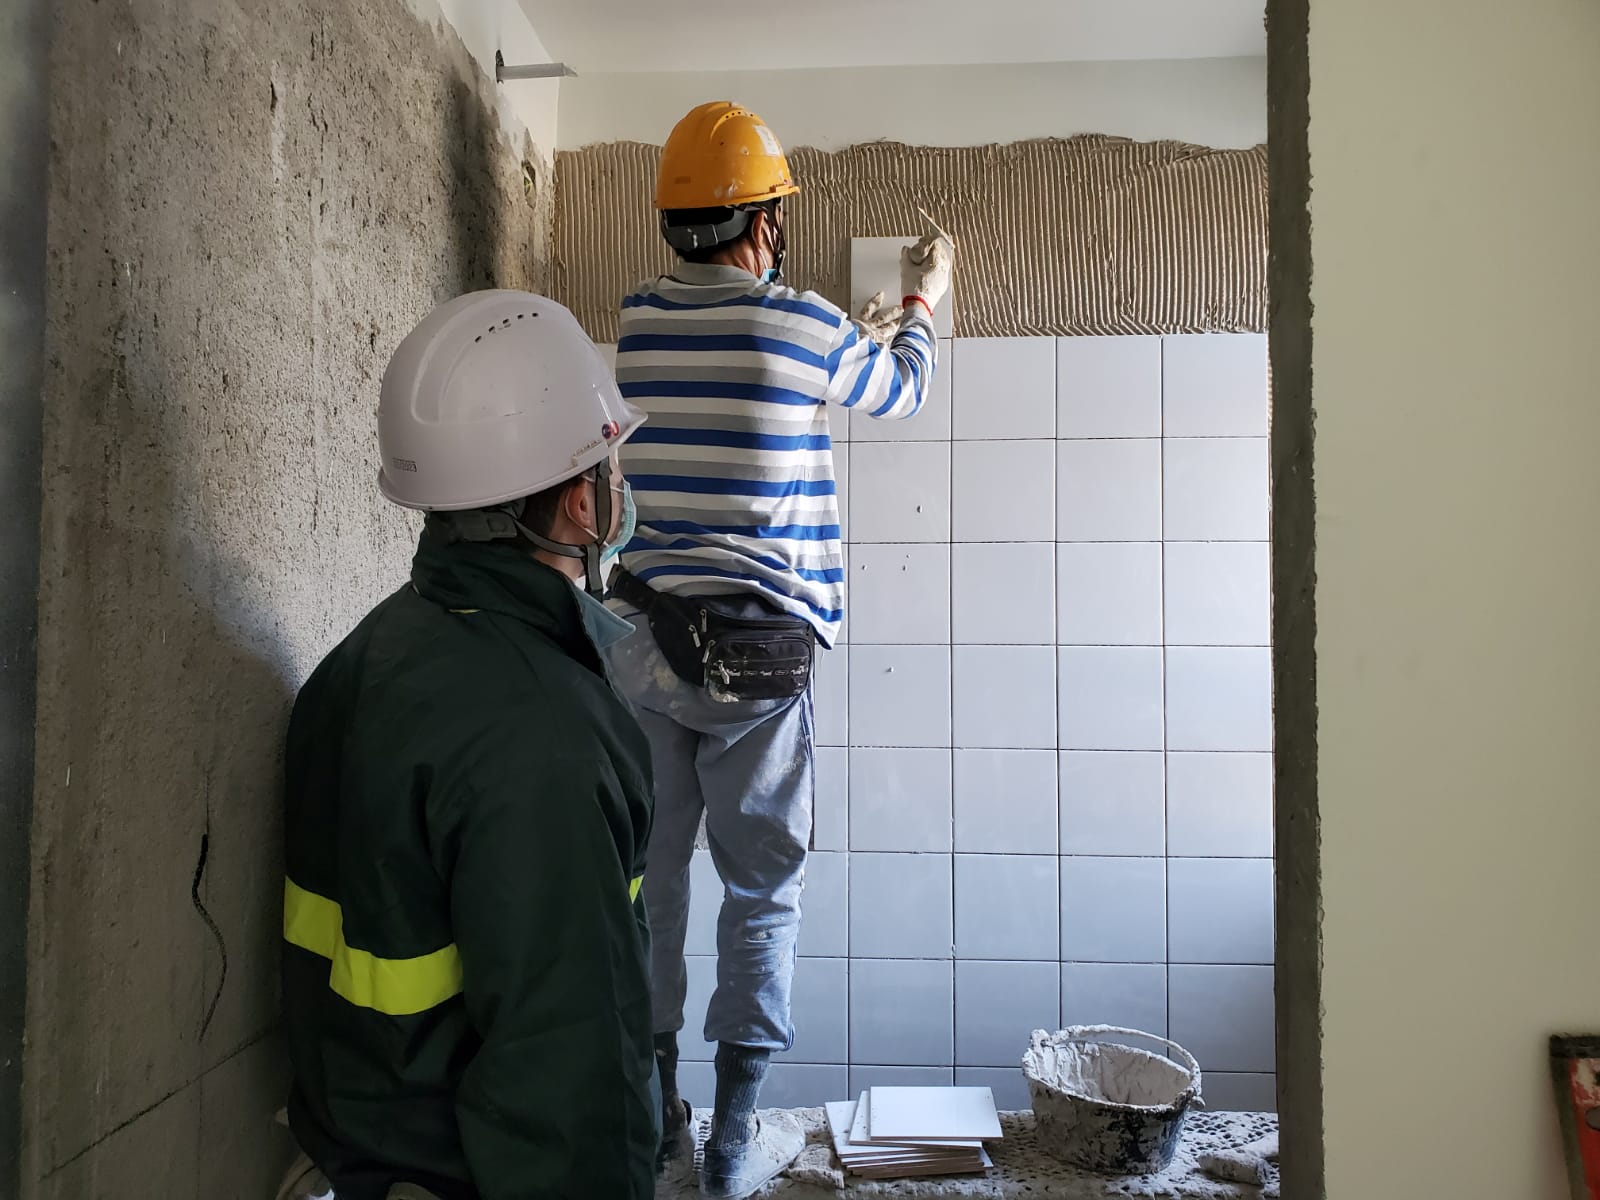 承建商須聘用合資格人員負責監督鋪砌瓷磚工程。